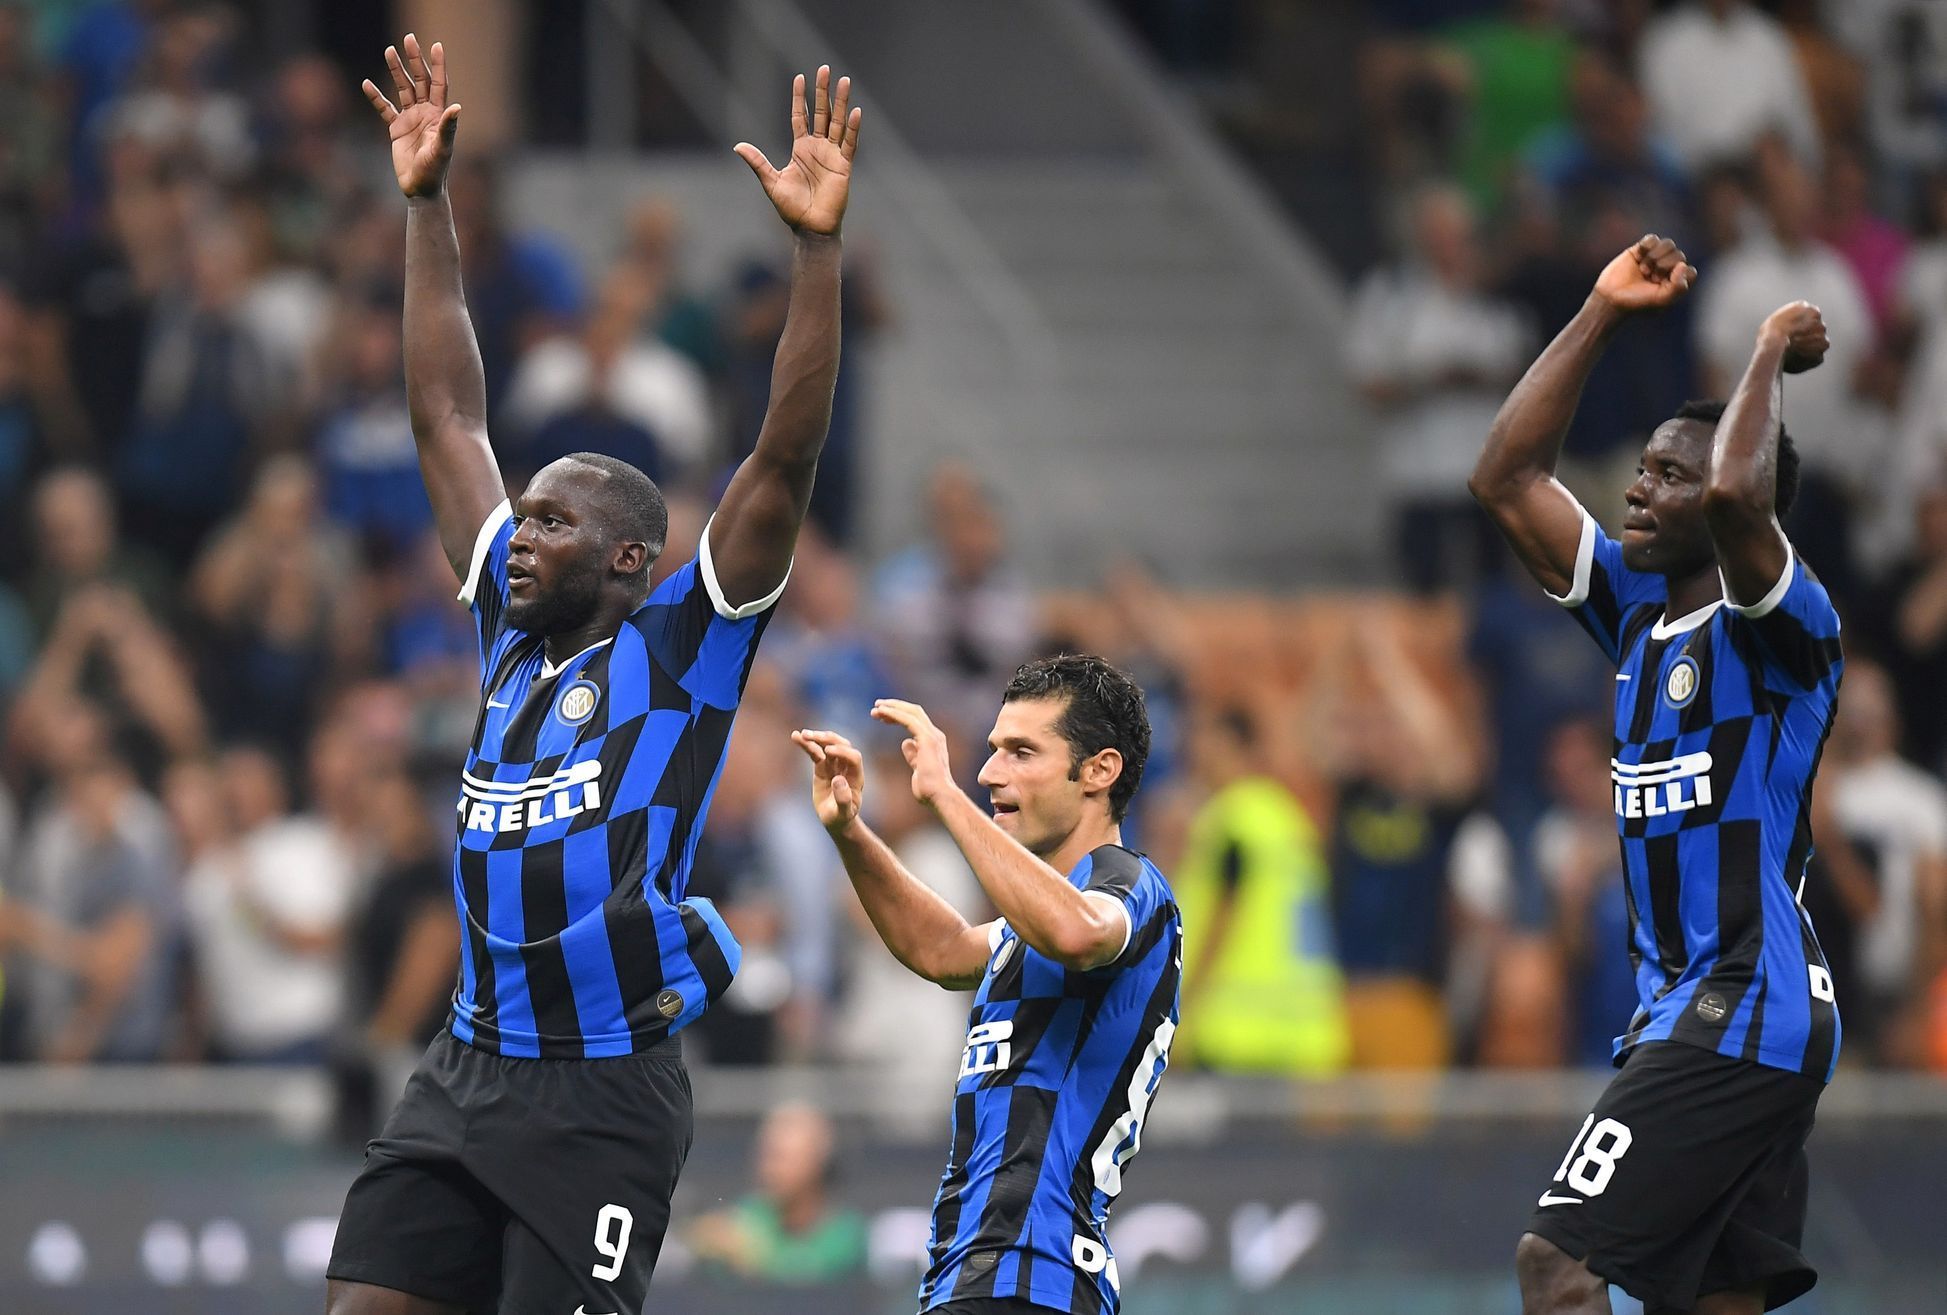 Radost fotbalistů Inter Milán